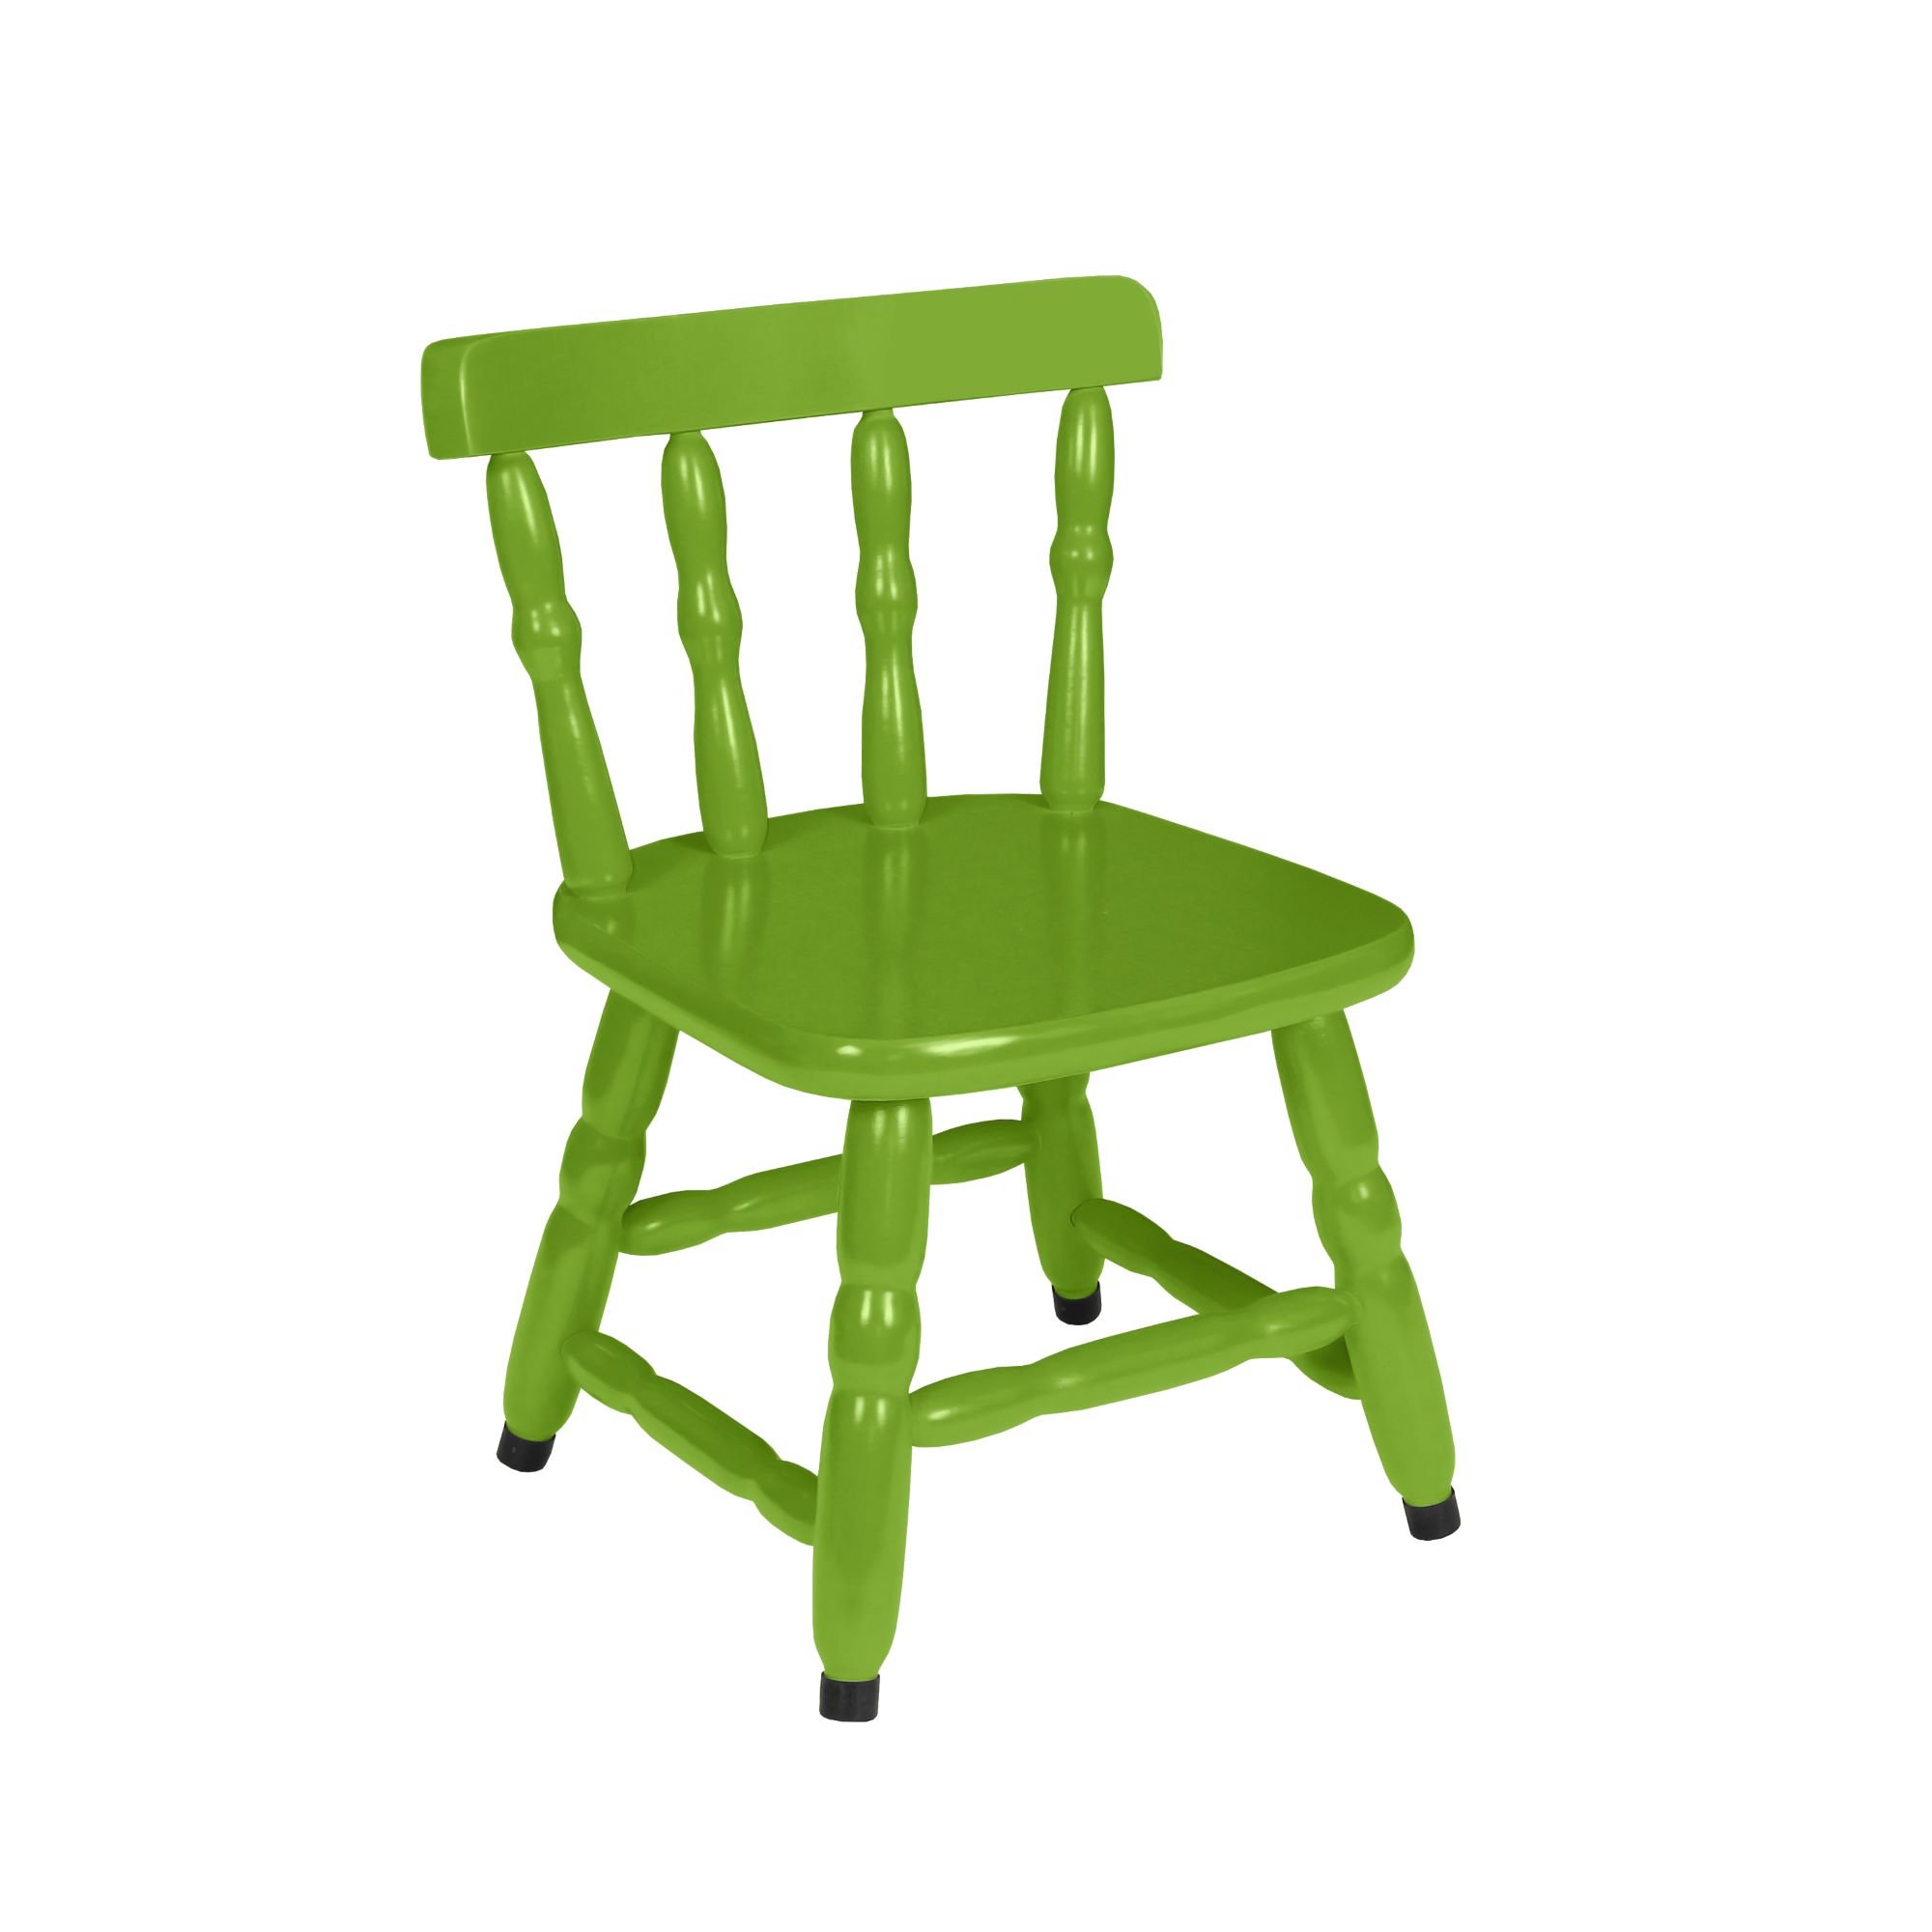 Conjunto Infantil Mesa com 4 Cadeiras - Colorido - 4